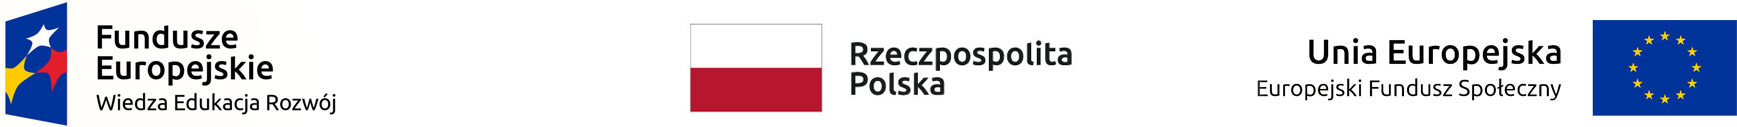 Logo Funduszy Europejskich, Rzeczypospolitej Polskiej, Unii Europejskiej